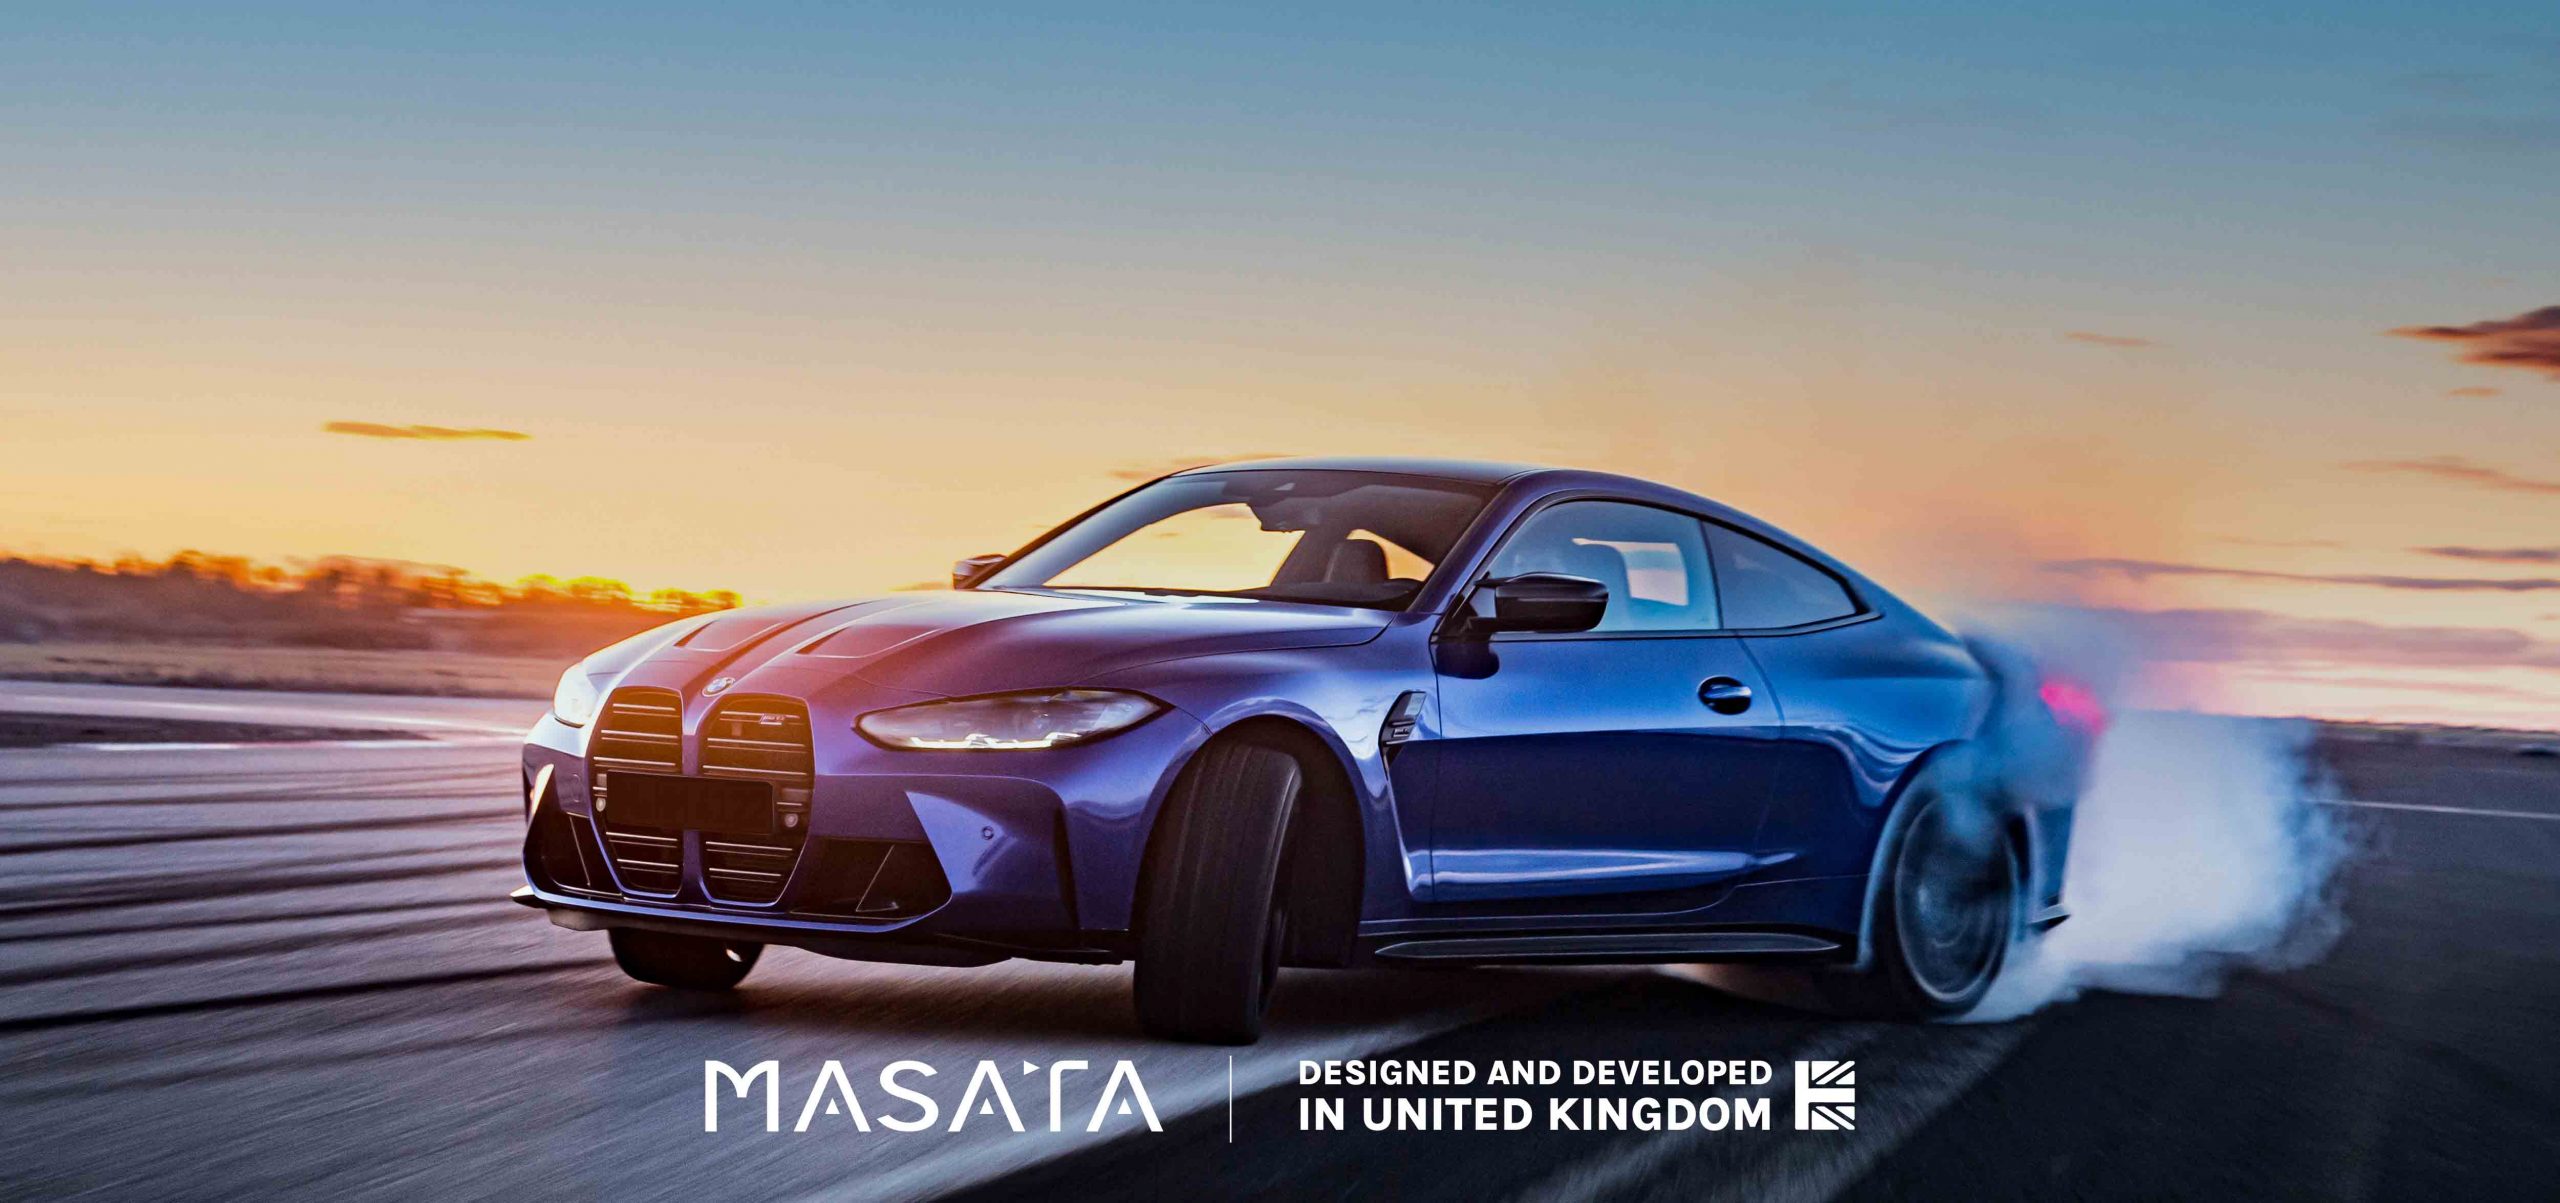 Masata - Designed and Developed in United Kingdom